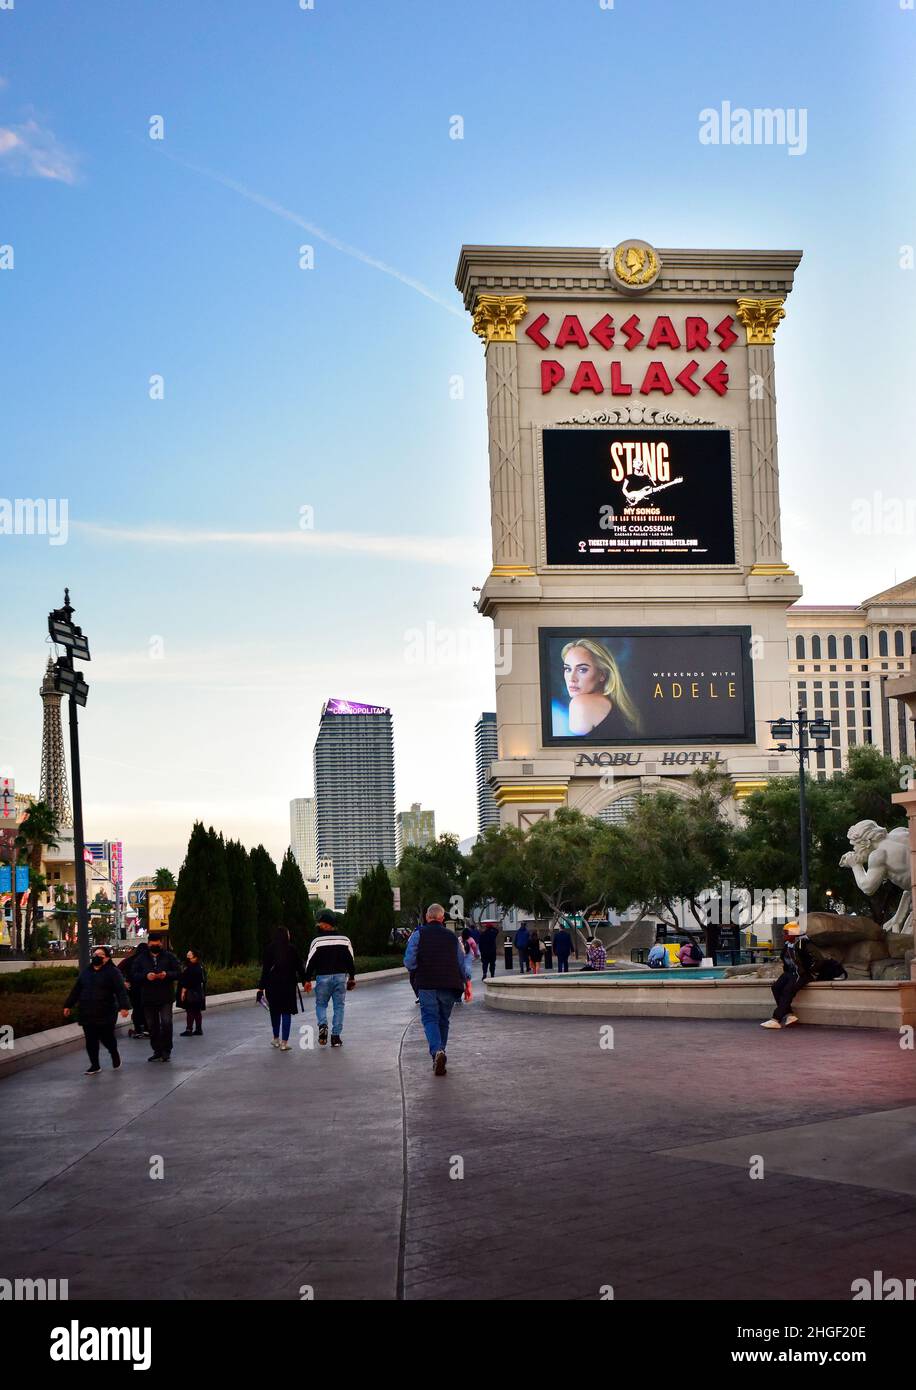 Caesars Palace sur le Strip de Las Vegas Banque D'Images